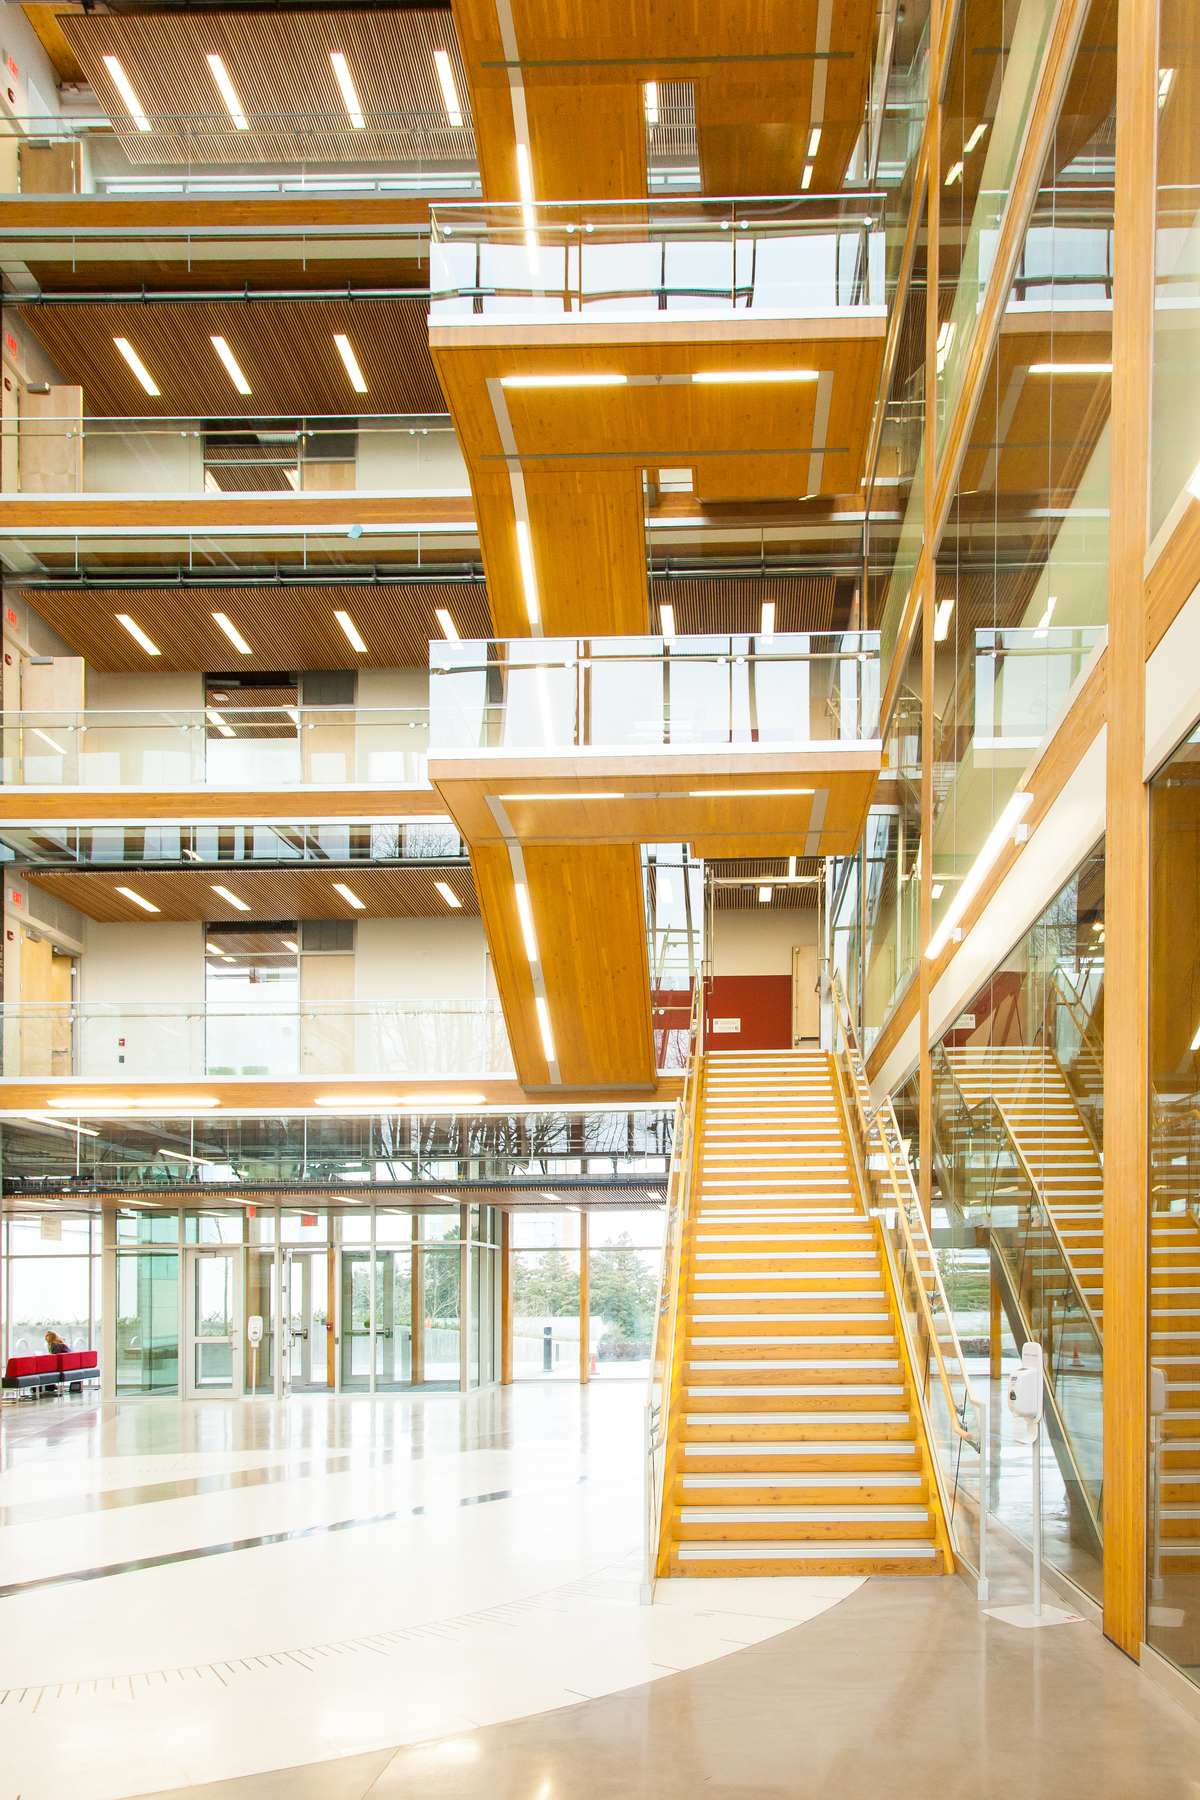 UBC地球科学大楼中庭的内部视图，展示了高密度城市环境的多层木结构技术